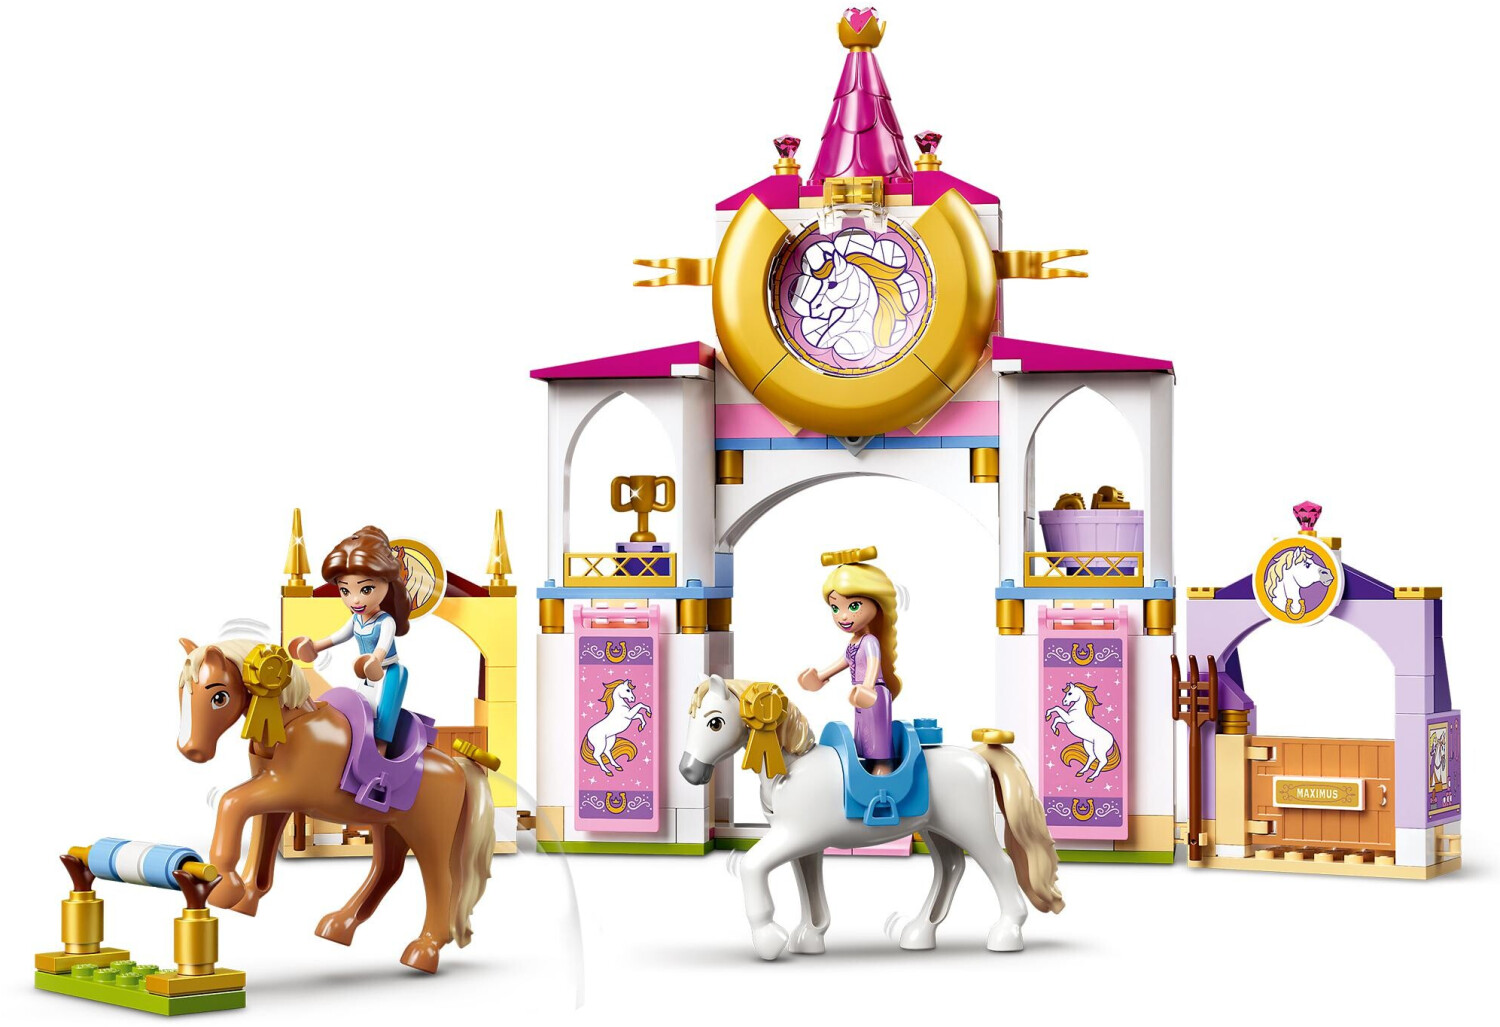 32,99 € Rapunzels | (43195) ab königliche bei Disney Princess Belles Preisvergleich Ställe und LEGO -